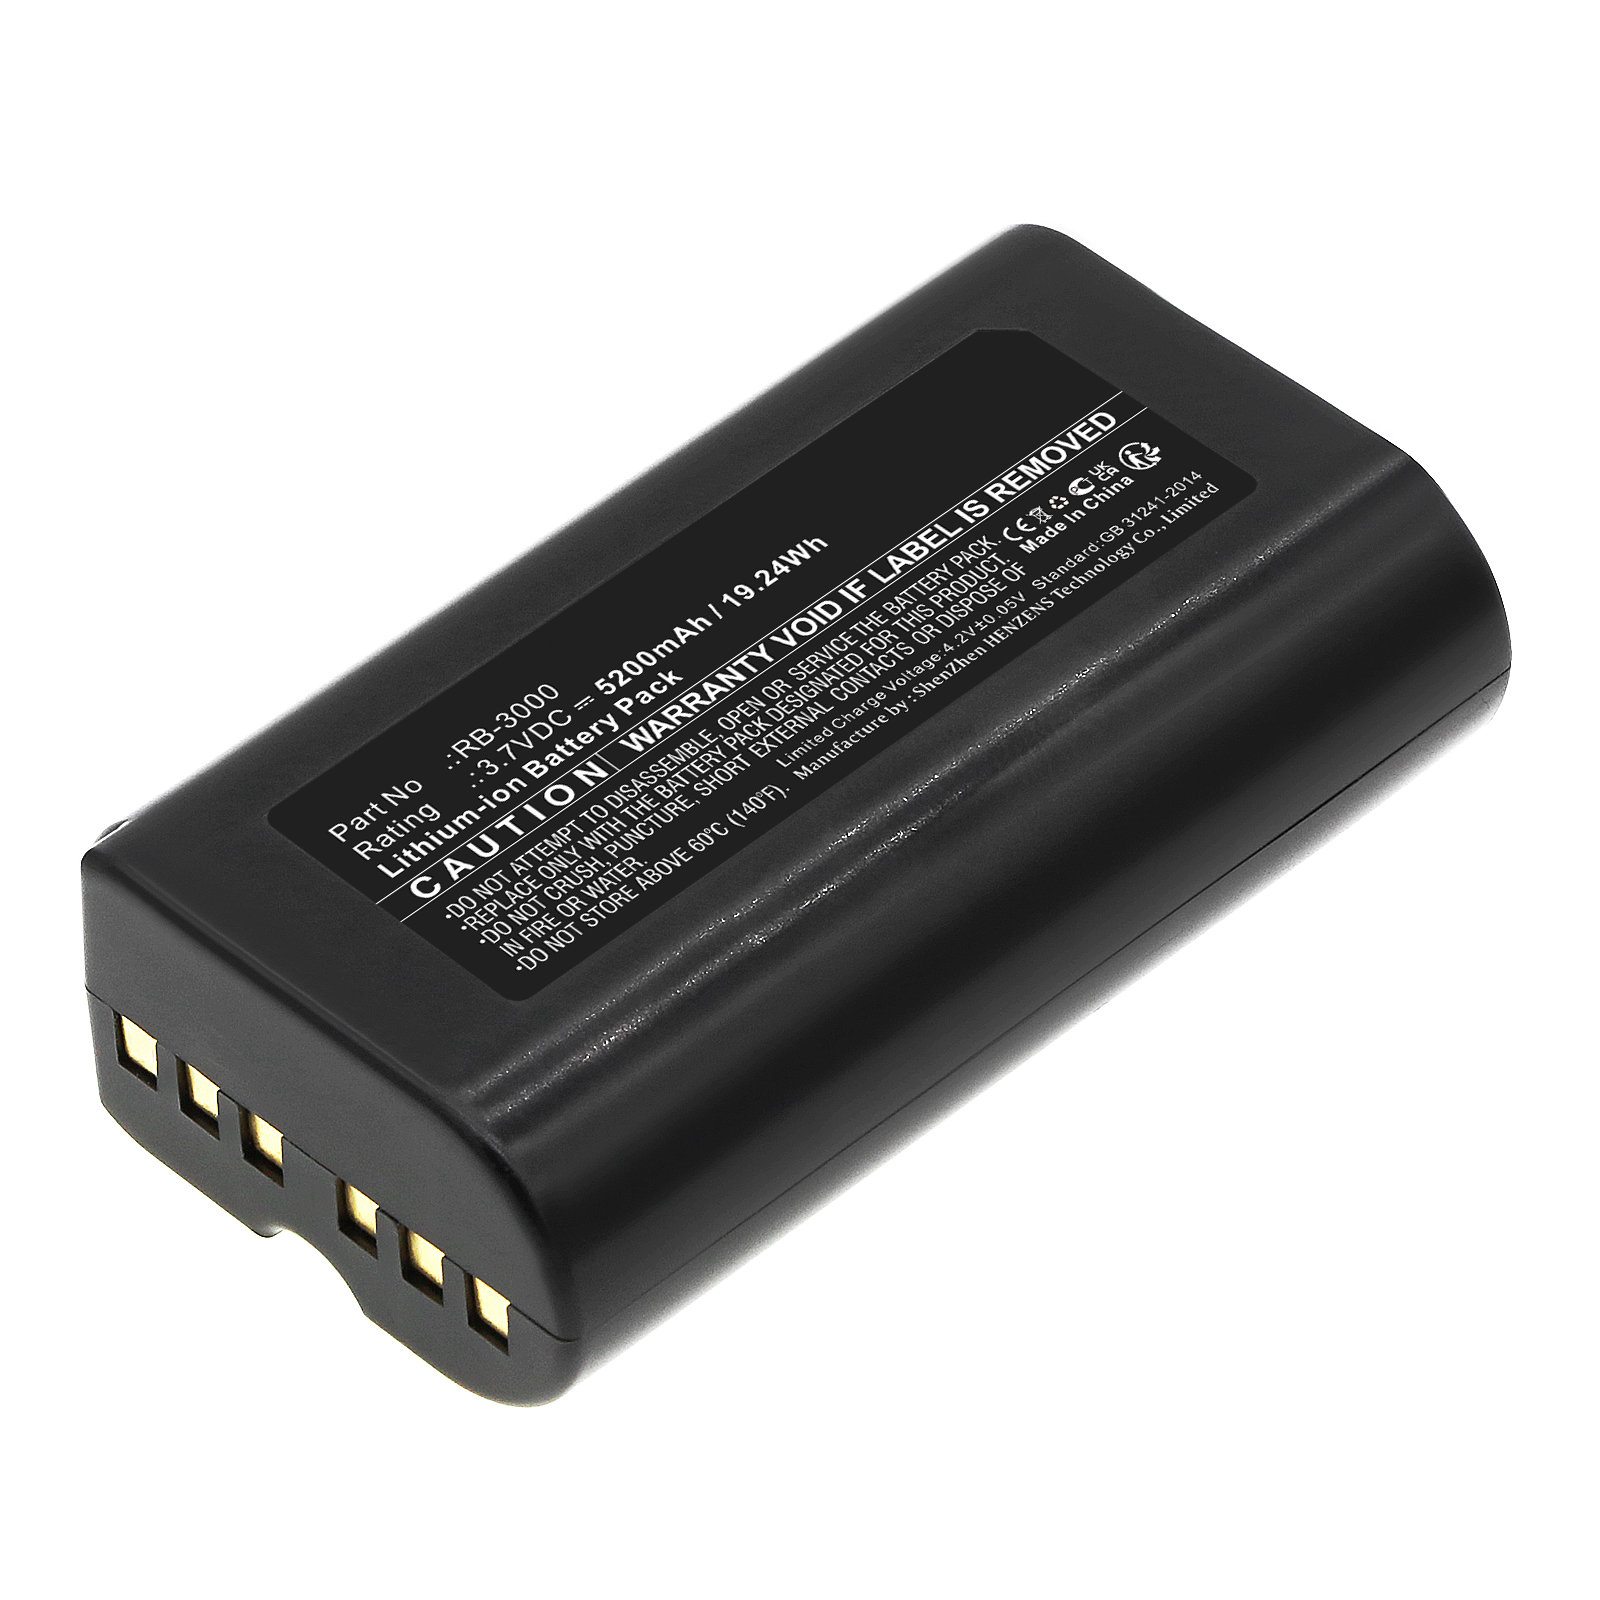 Synergy Digital Barcode Scanner Battery, Compatible with Posiflex RB-3000 Barcode Scanner Battery (Li-ion, 3.7V, 5200mAh)